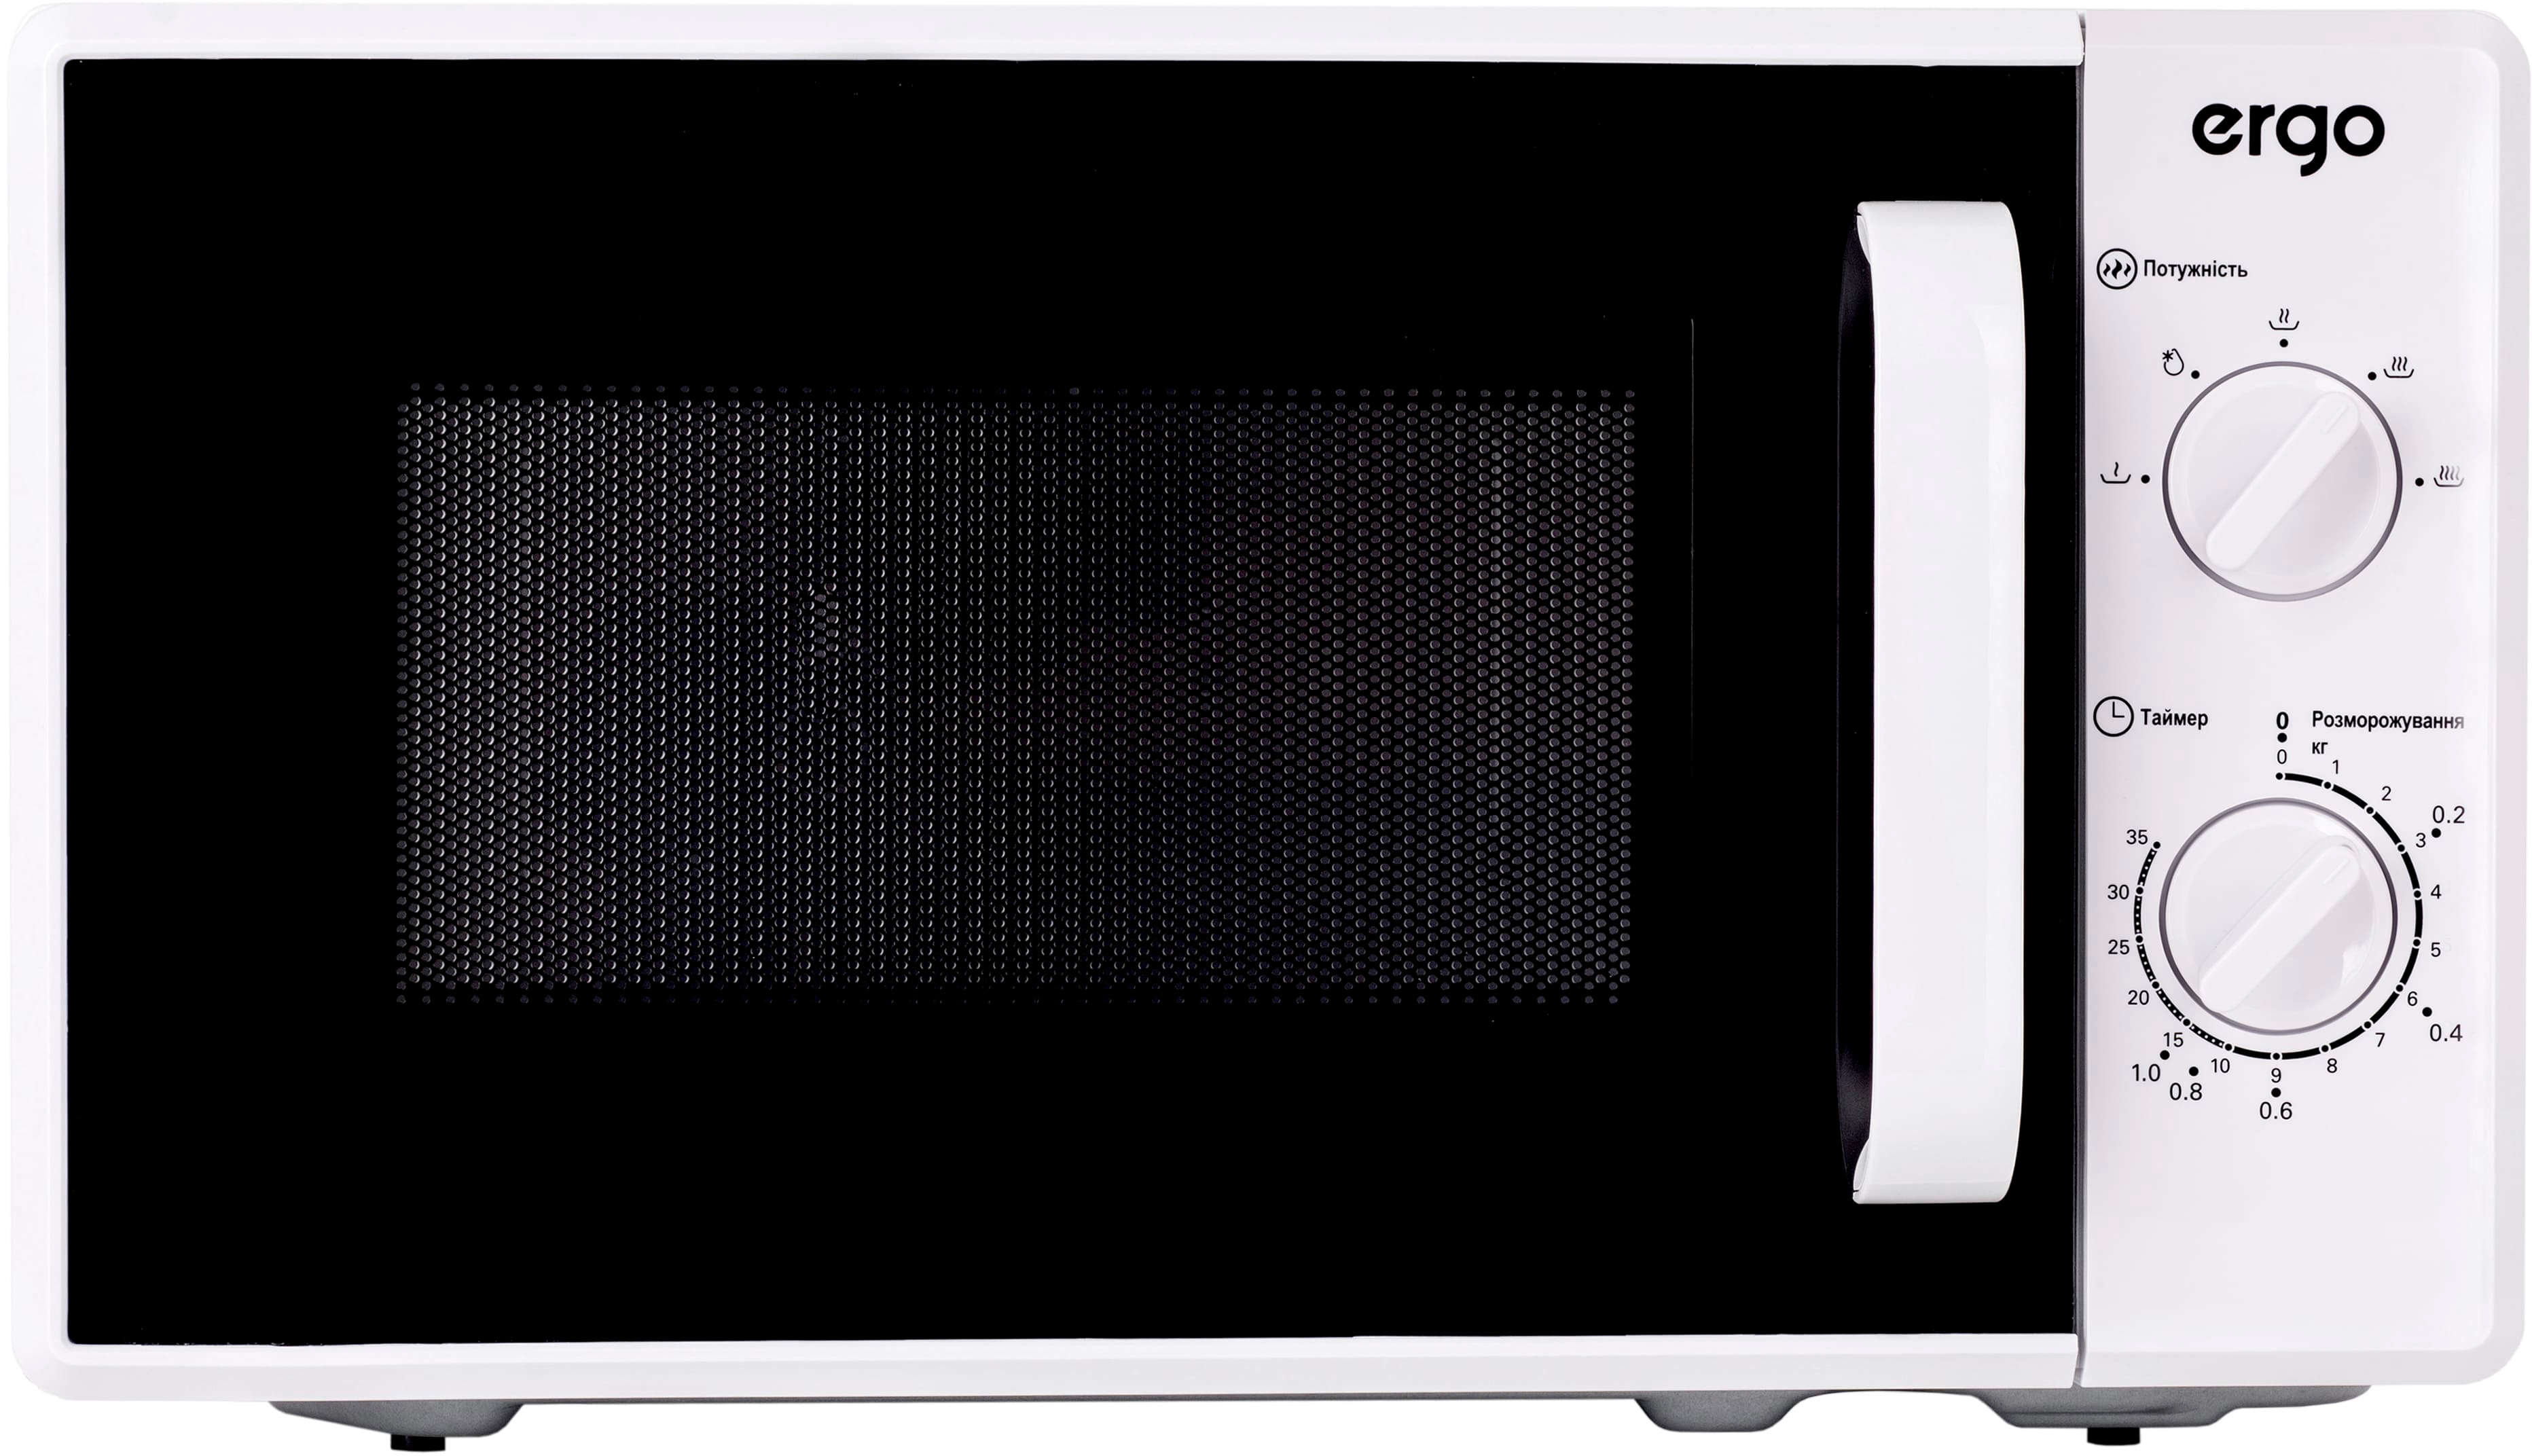 Микроволновая печь Ergo EM-2070 в интернет-магазине, главное фото